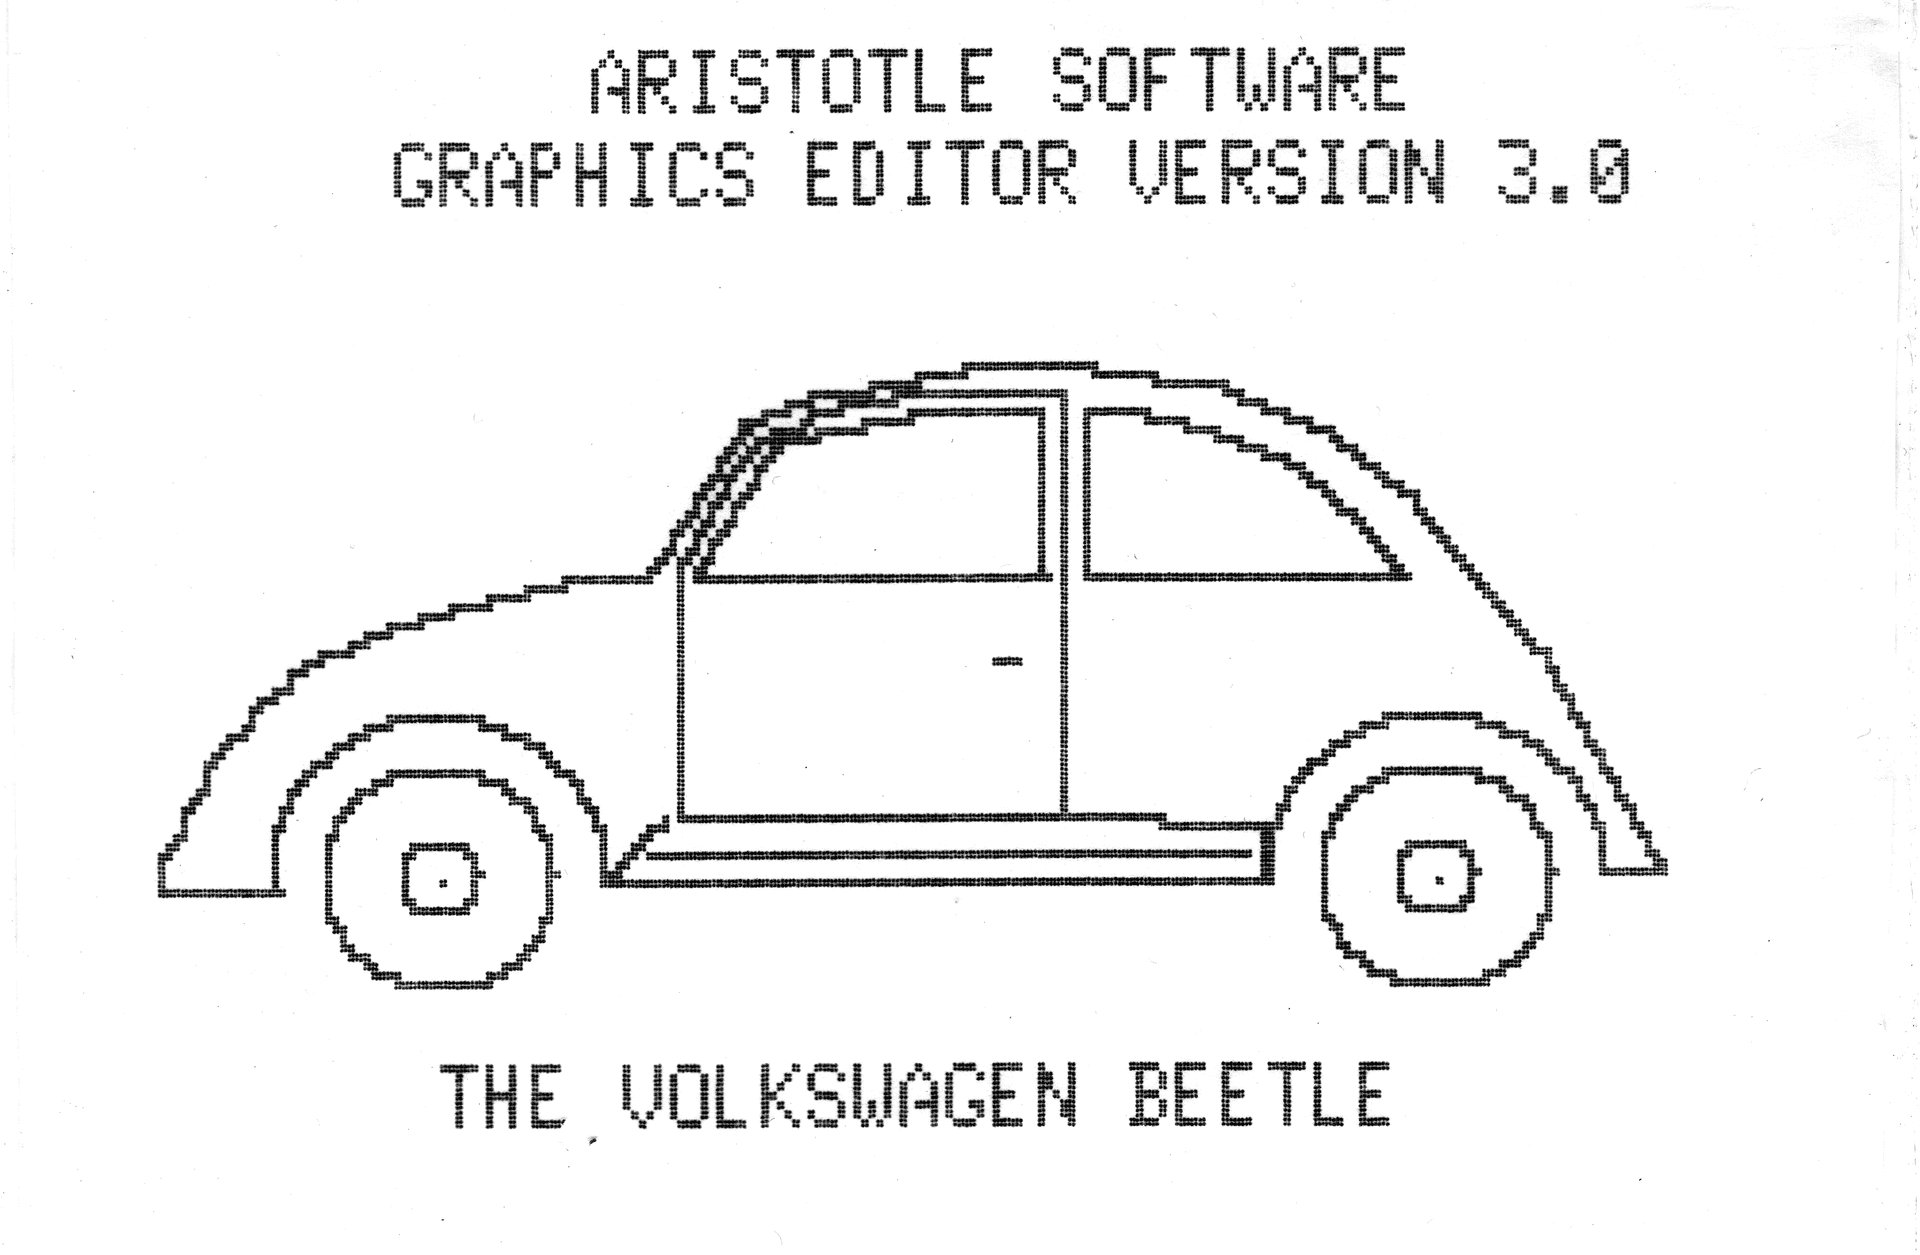 Aristotle Software - Graphics Editor 3.0 packaging - Volkswagen Beetle